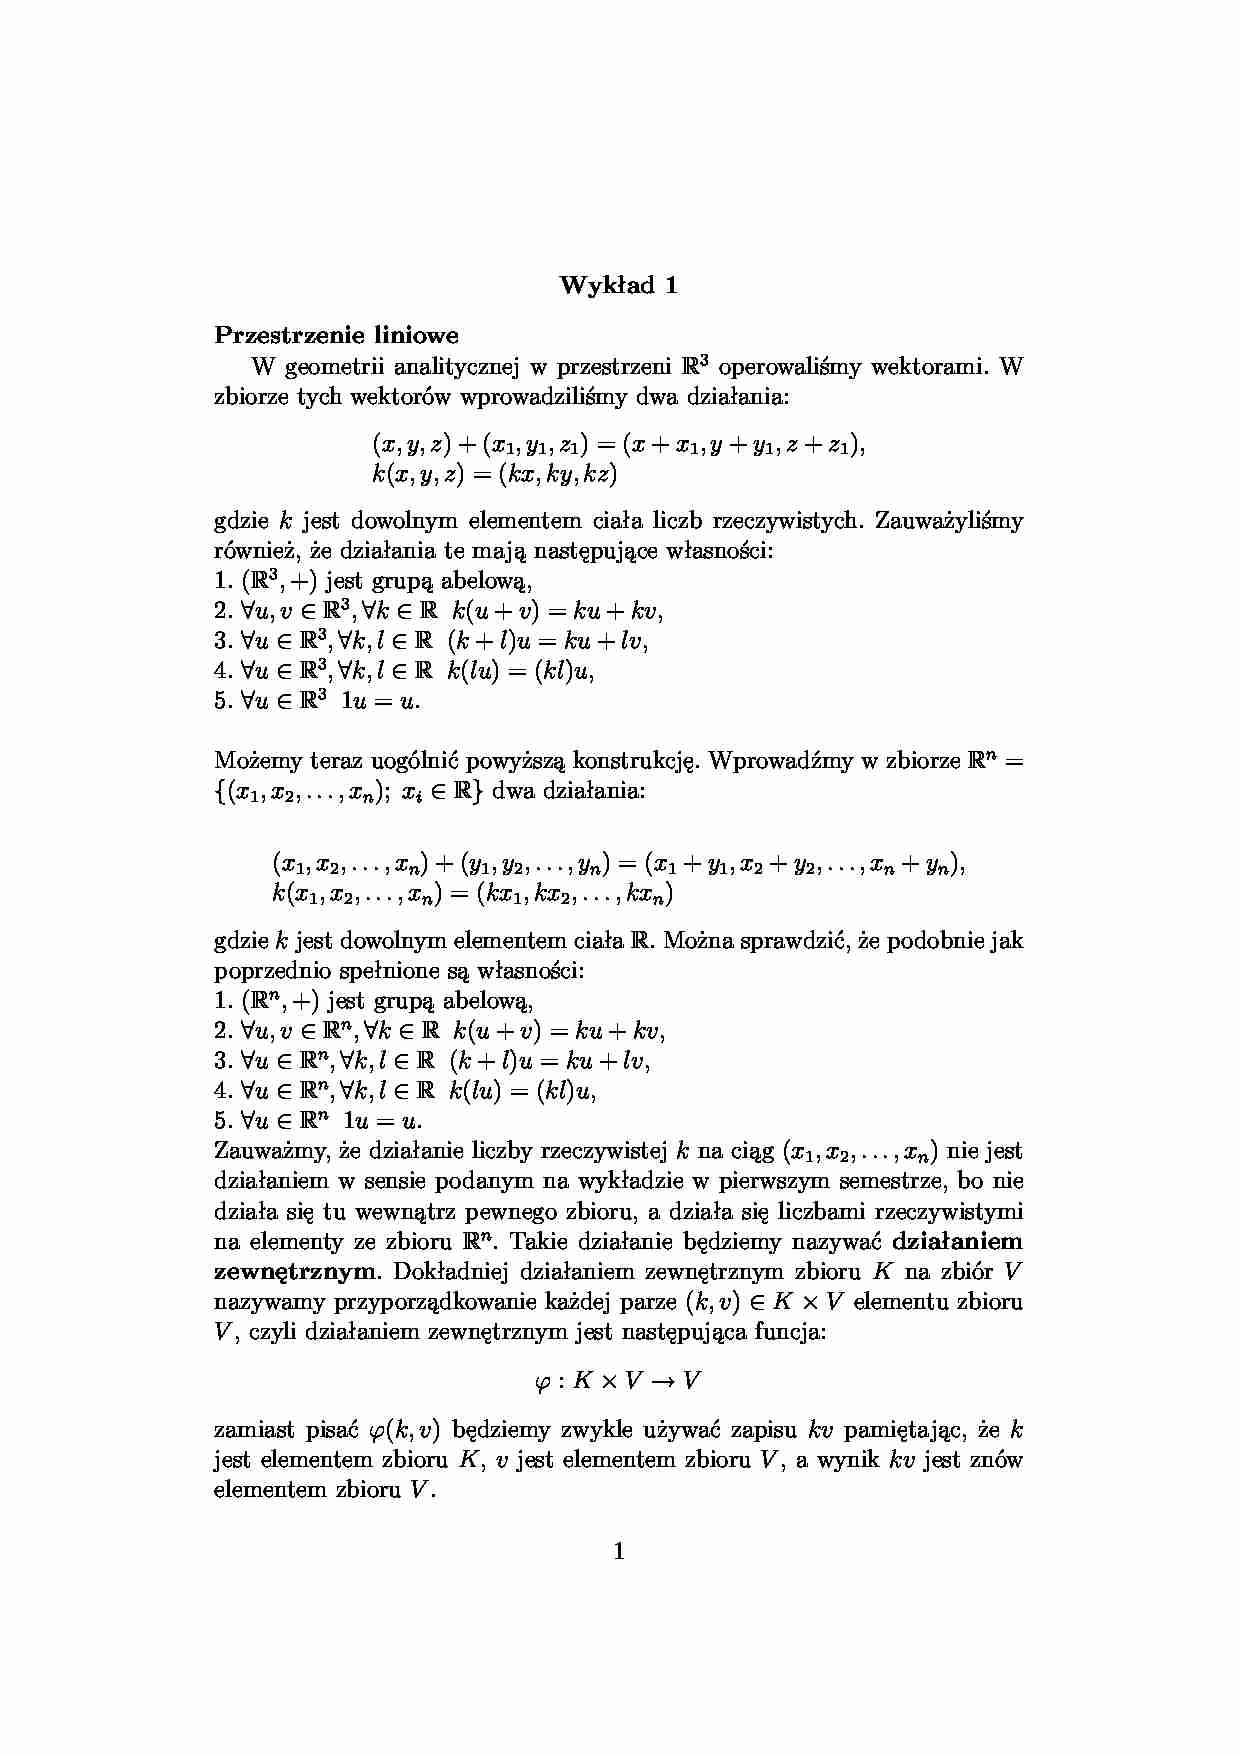 Przestrzenie liniowe - algebra - strona 1